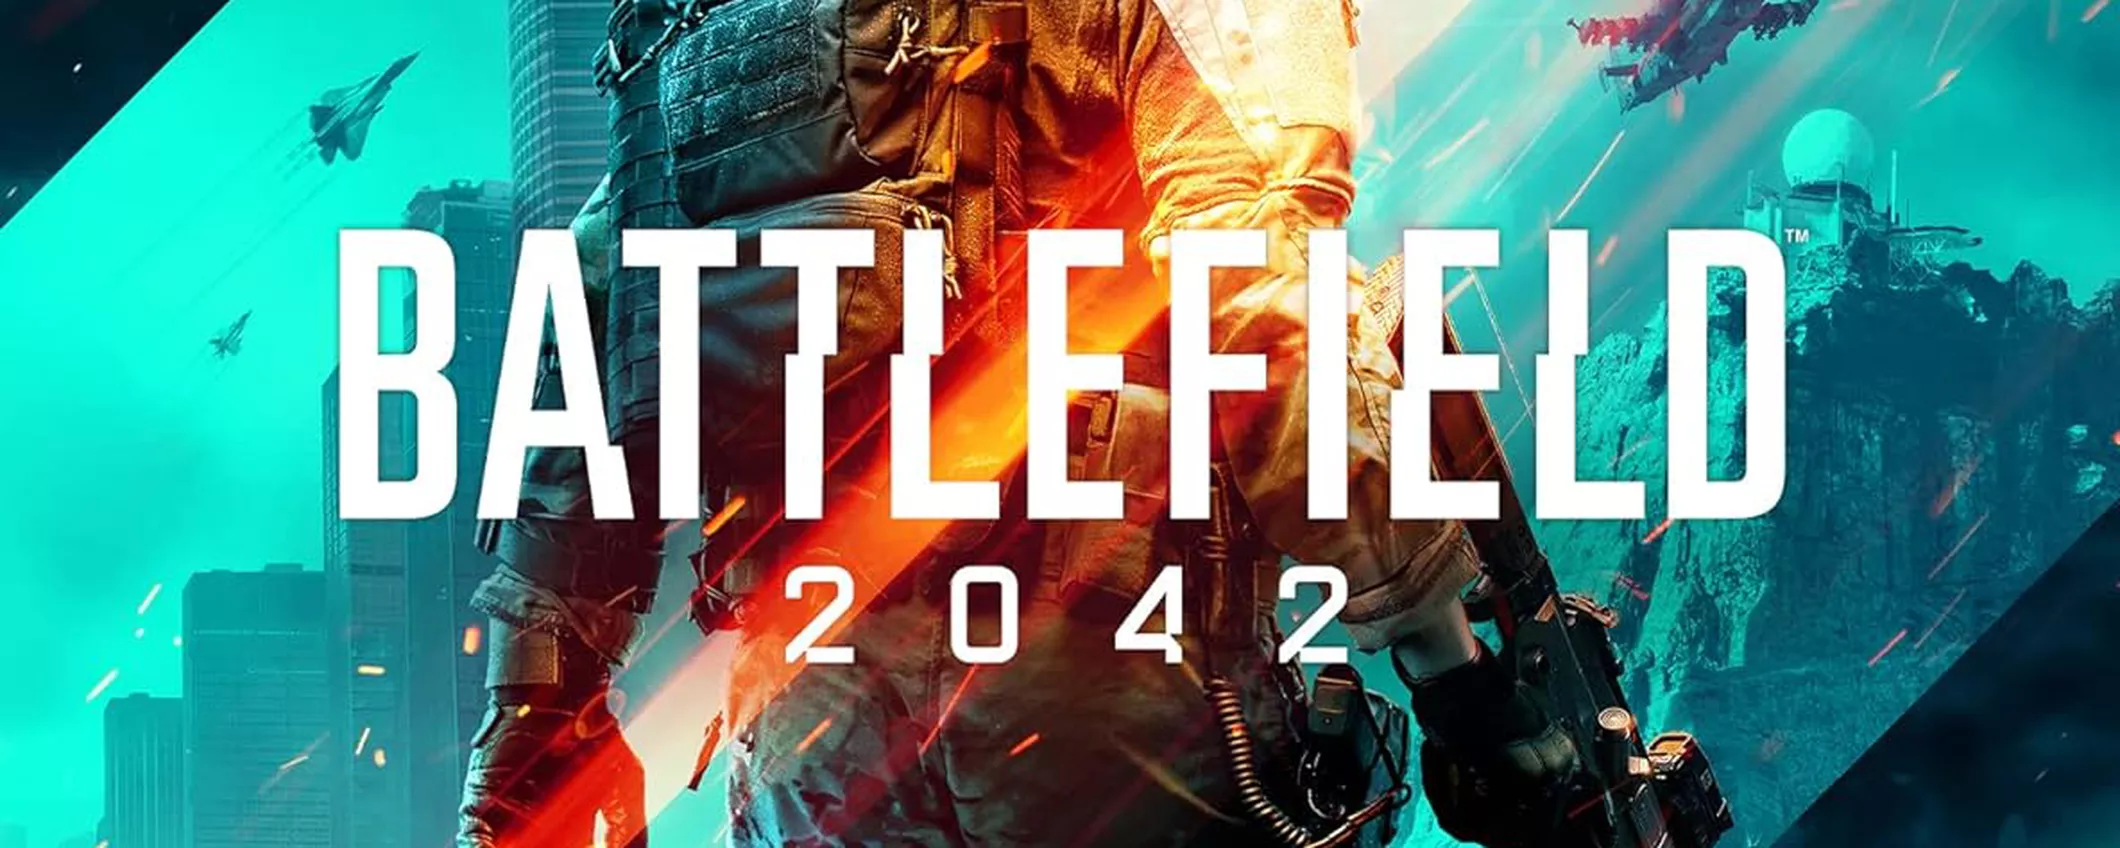 Battlefield 2042 per Xbox Series X a 4€ su Amazon: lo sconto SHOCK è del 92%